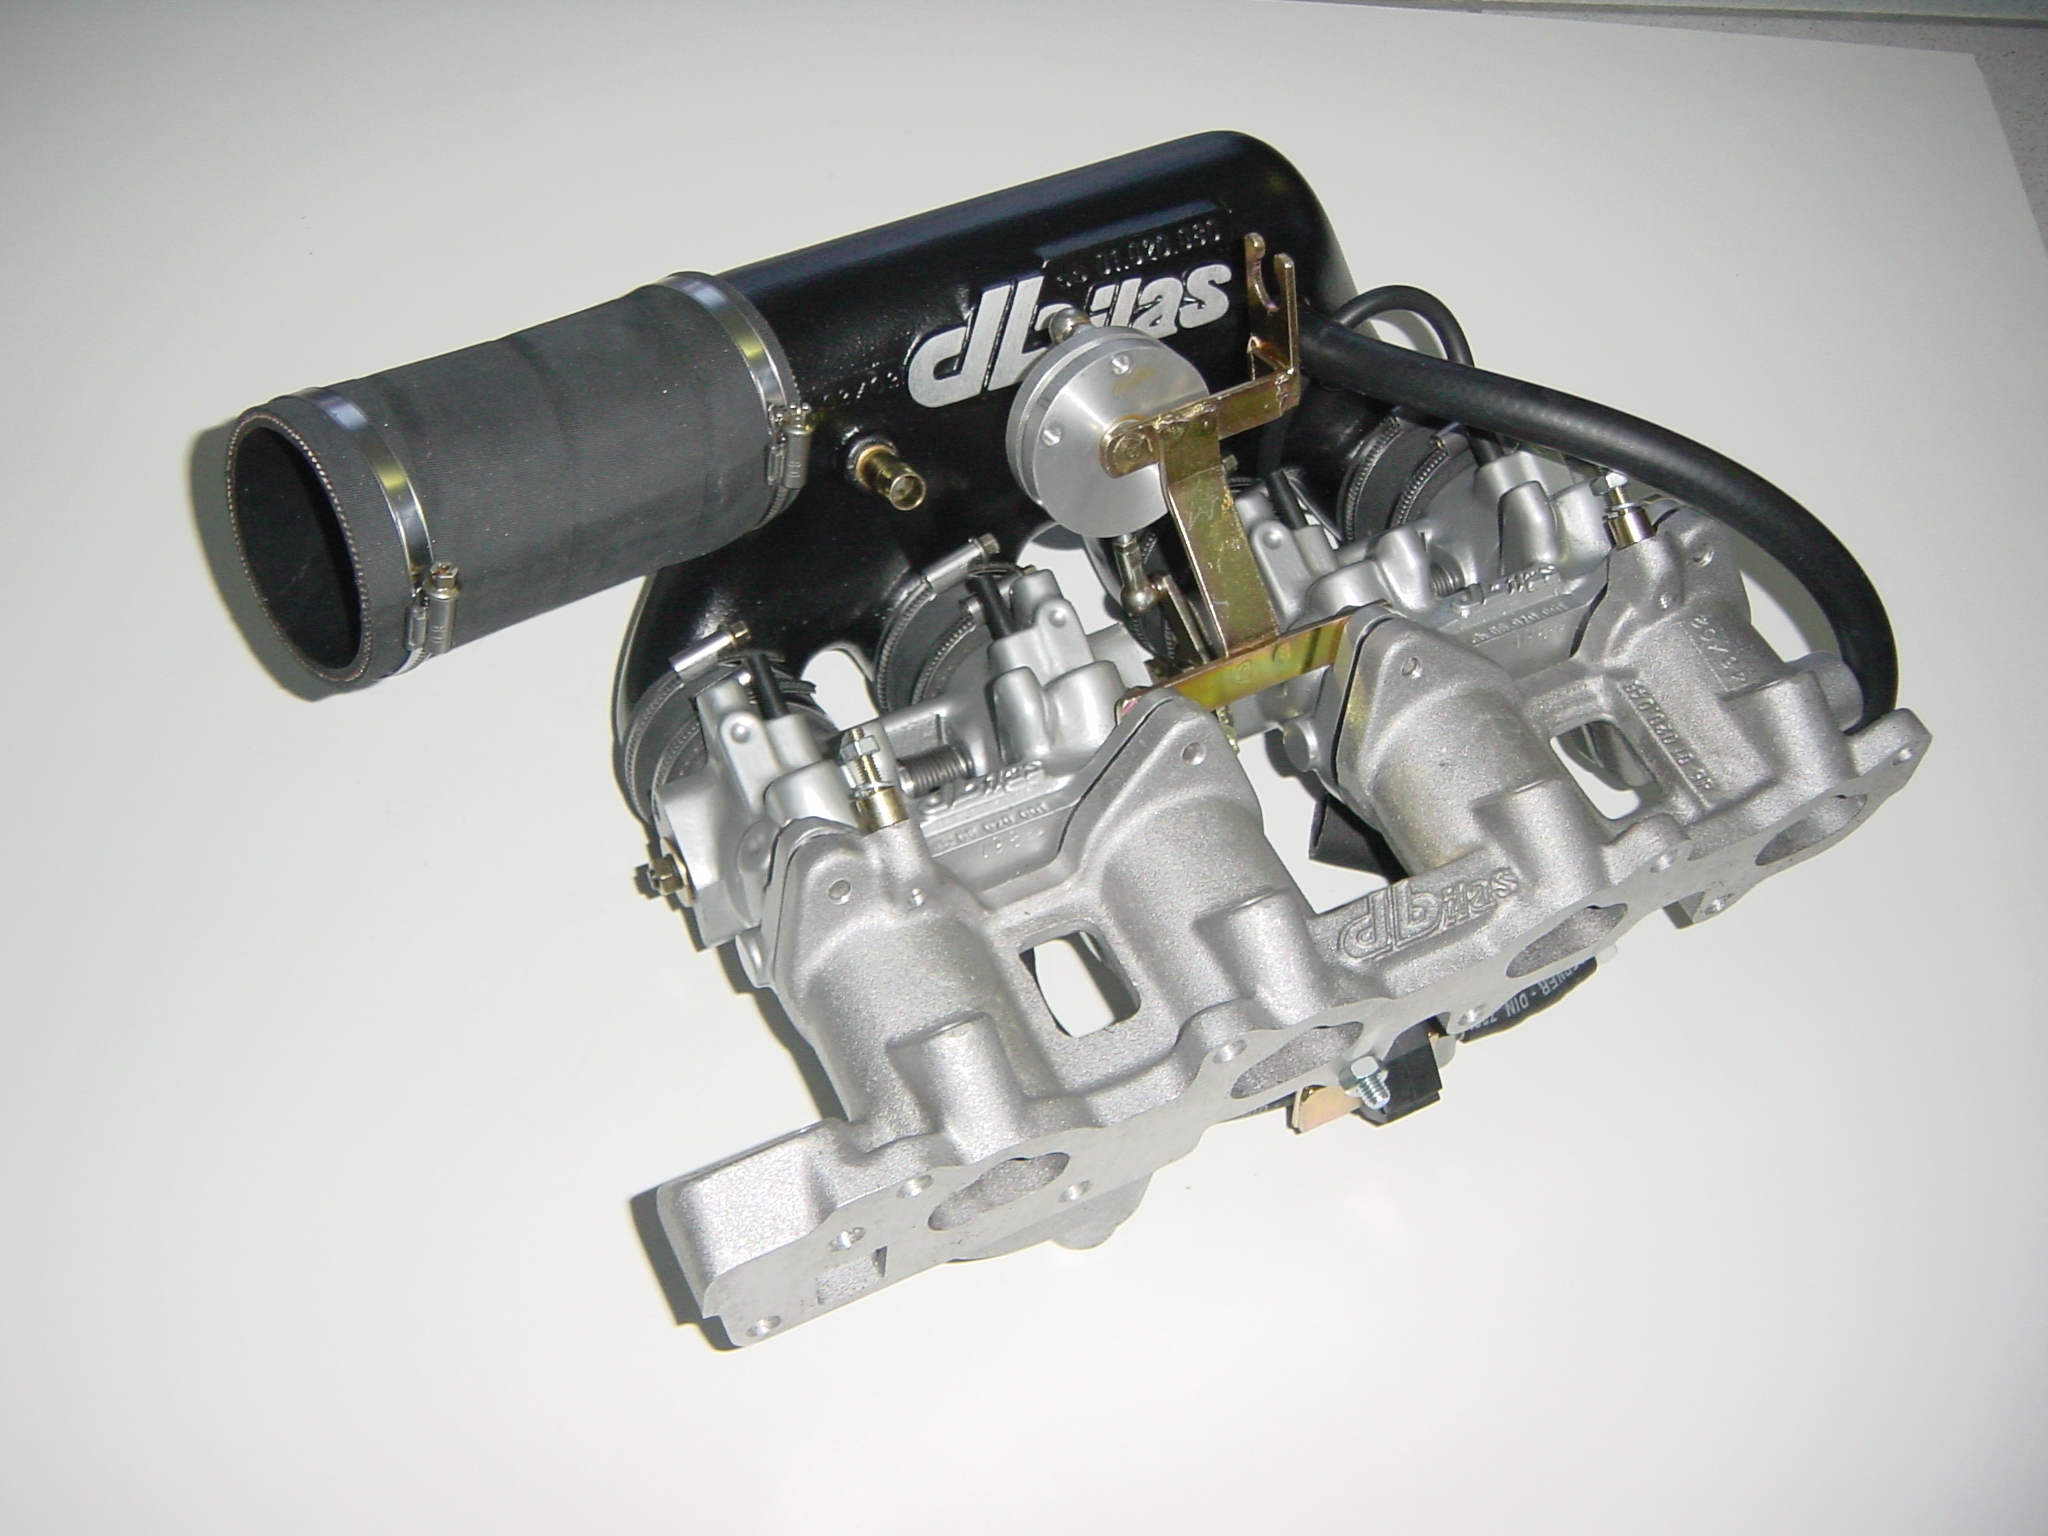 Einzeldrosselklappen- Einspritzung Opel 2,0 16V 110kW C20XE